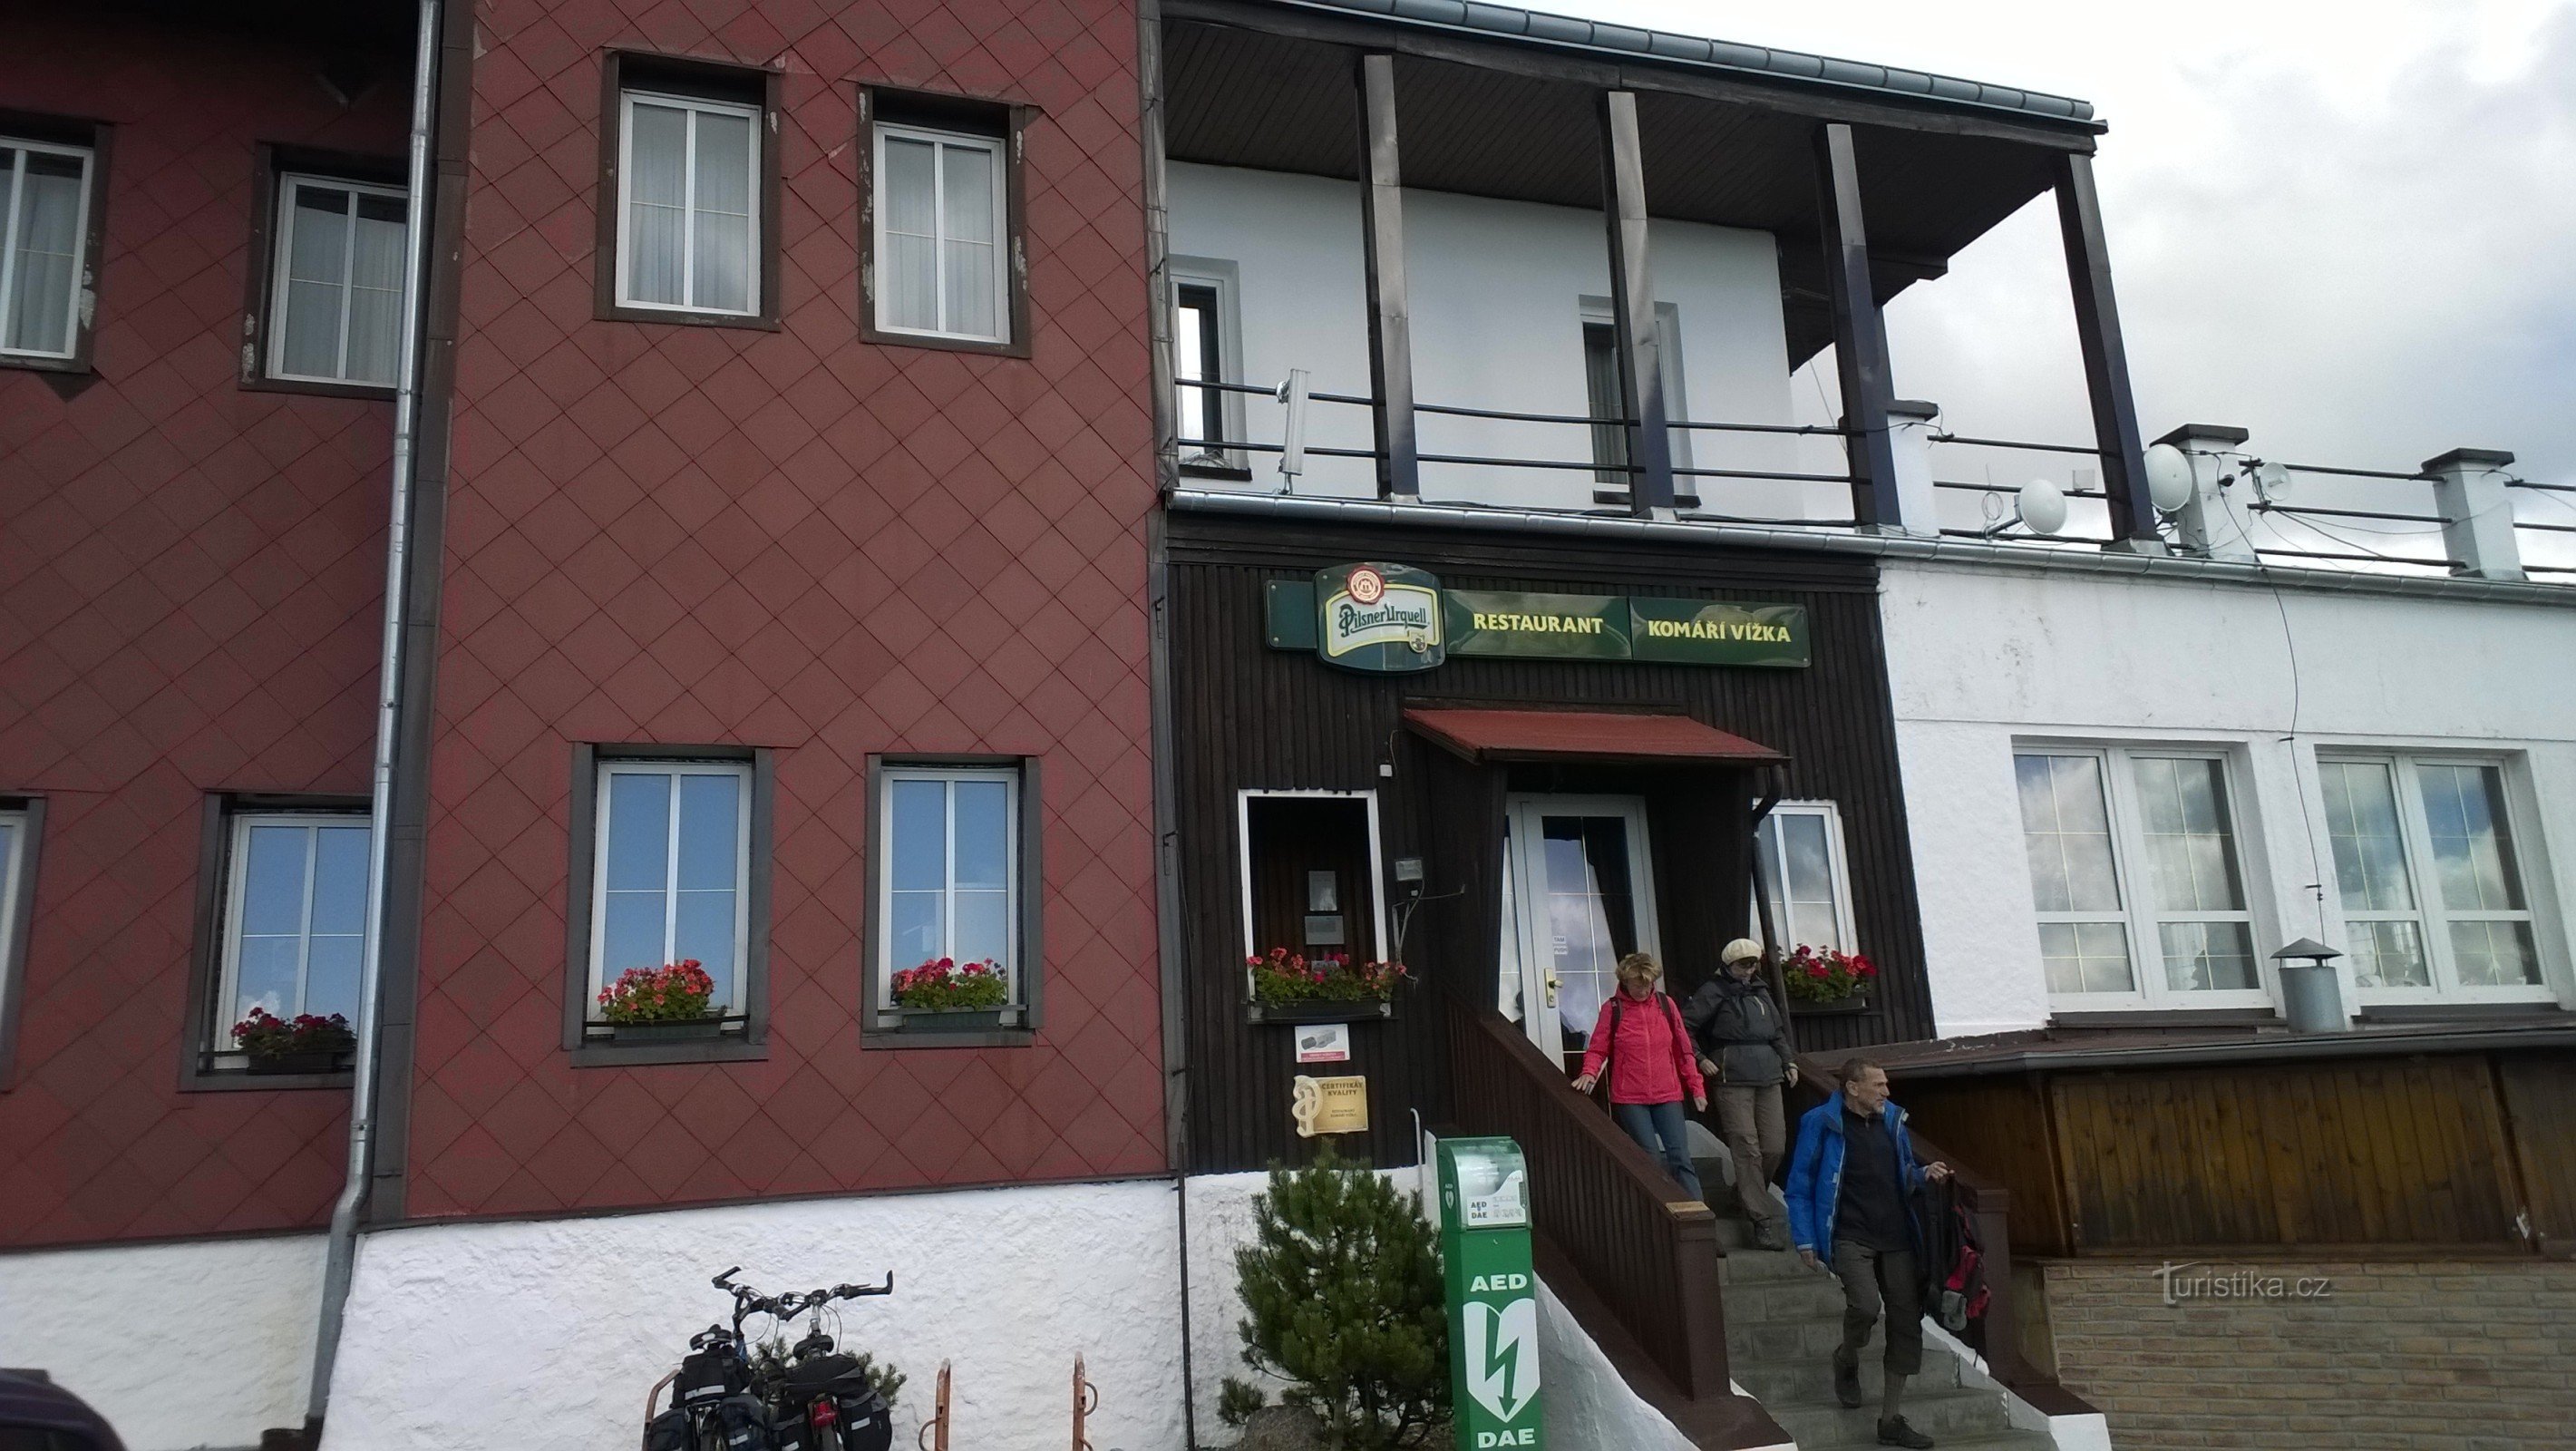 Nhà hàng tại Komáří vižka.